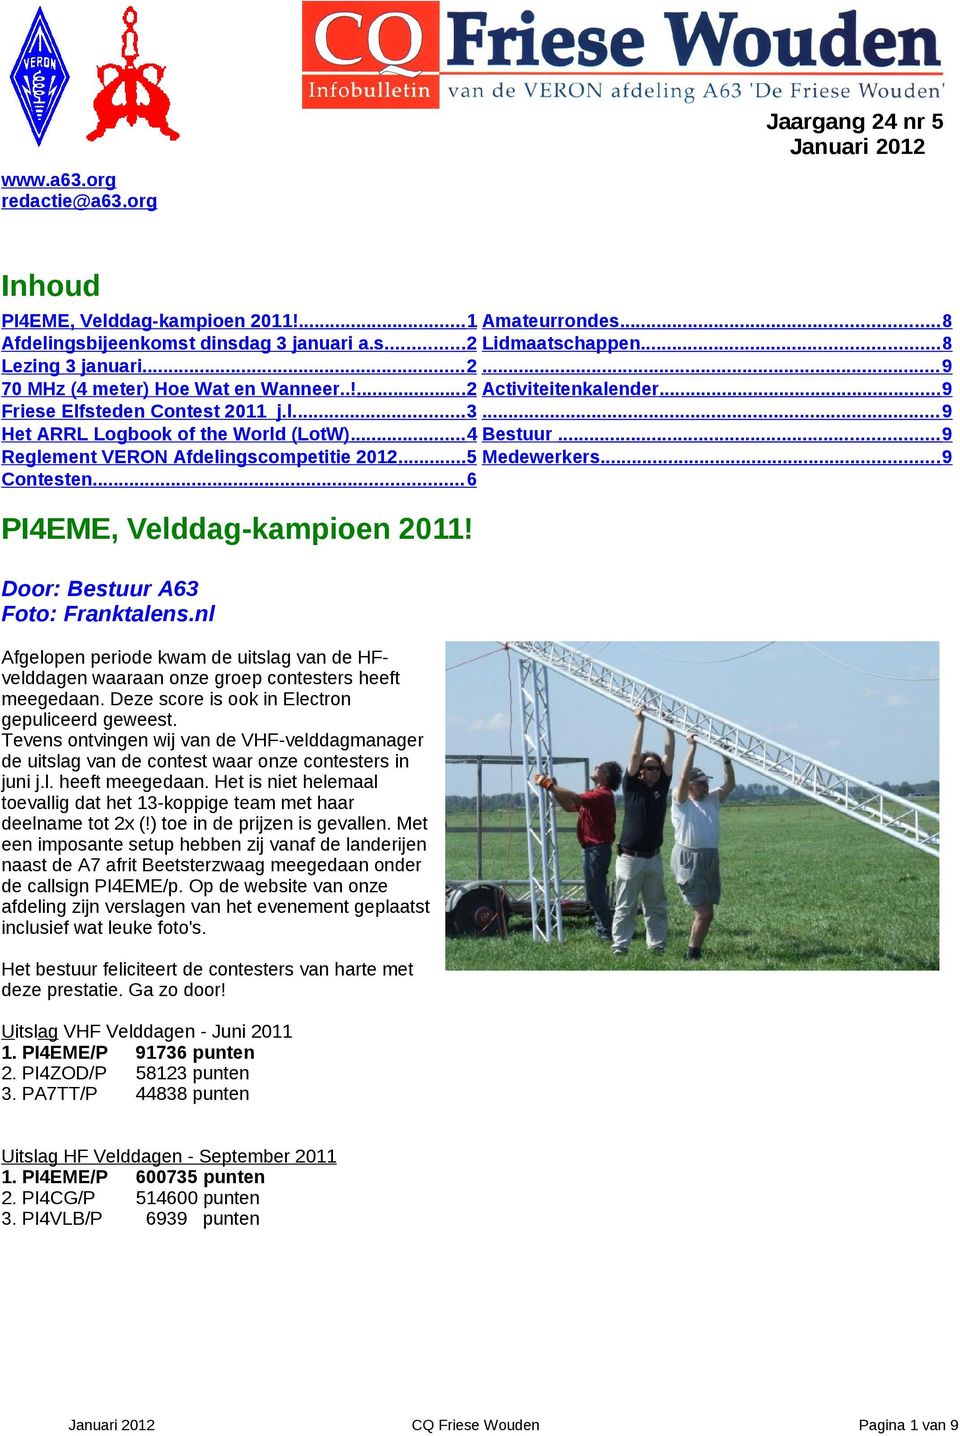 .. 9 Reglement VERON Afdelingscompetitie 2012...5 Medewerkers... 9 Contesten... 6 PI4EME, Velddag-kampioen 2011! Door: Bestuur A63 Foto: Franktalens.